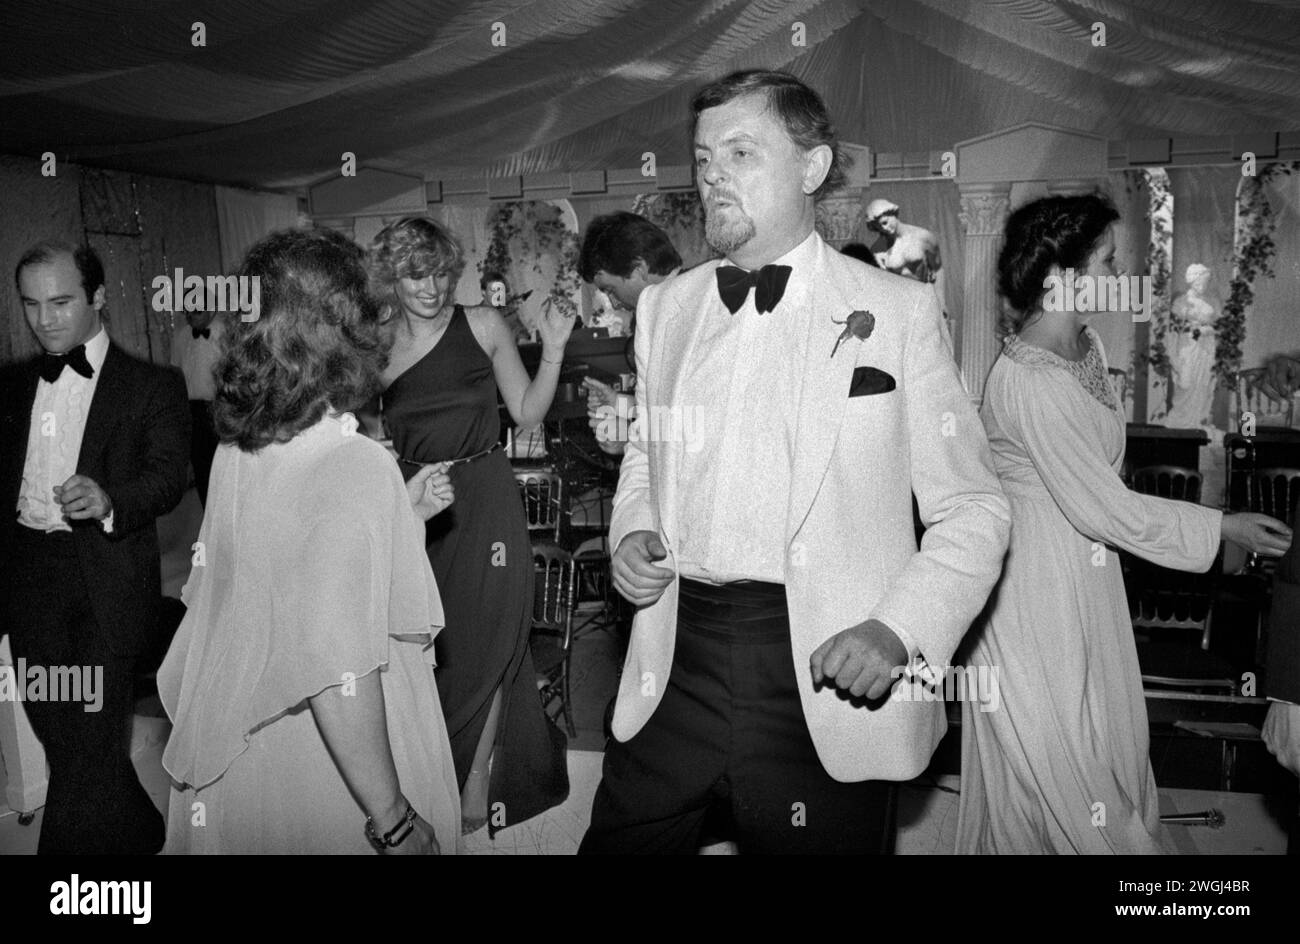 Westminster, Londra, Inghilterra settembre 1981. La ricca classe media danzerà tutta la notte all'annuale Berkeley Square Ball di Londra. HOMER SYKES nel Regno Unito degli anni '1980 Foto Stock